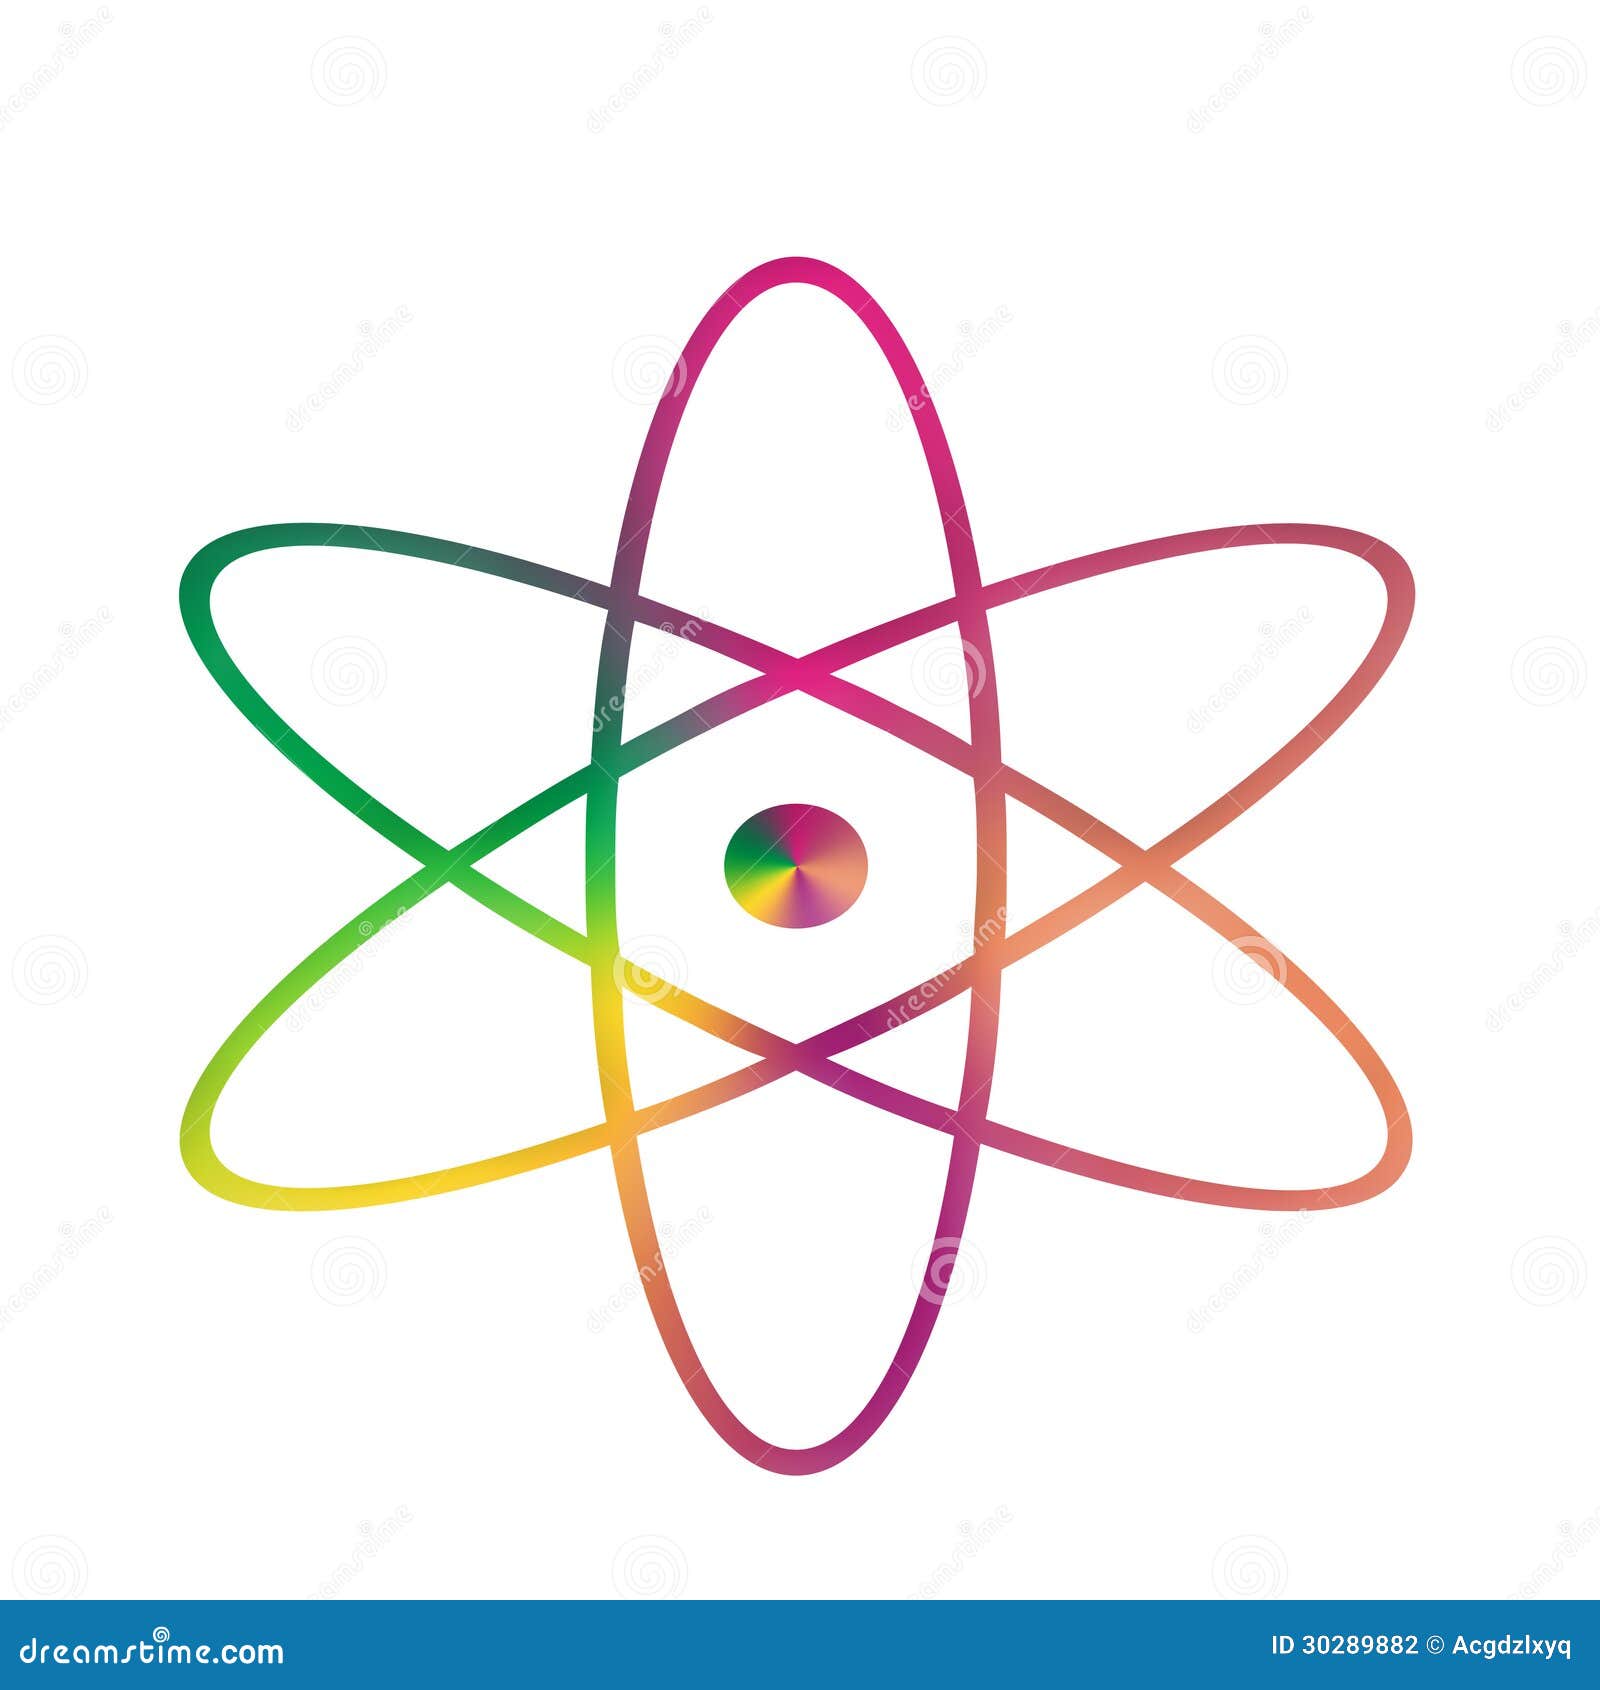 clip art atom symbol - photo #19